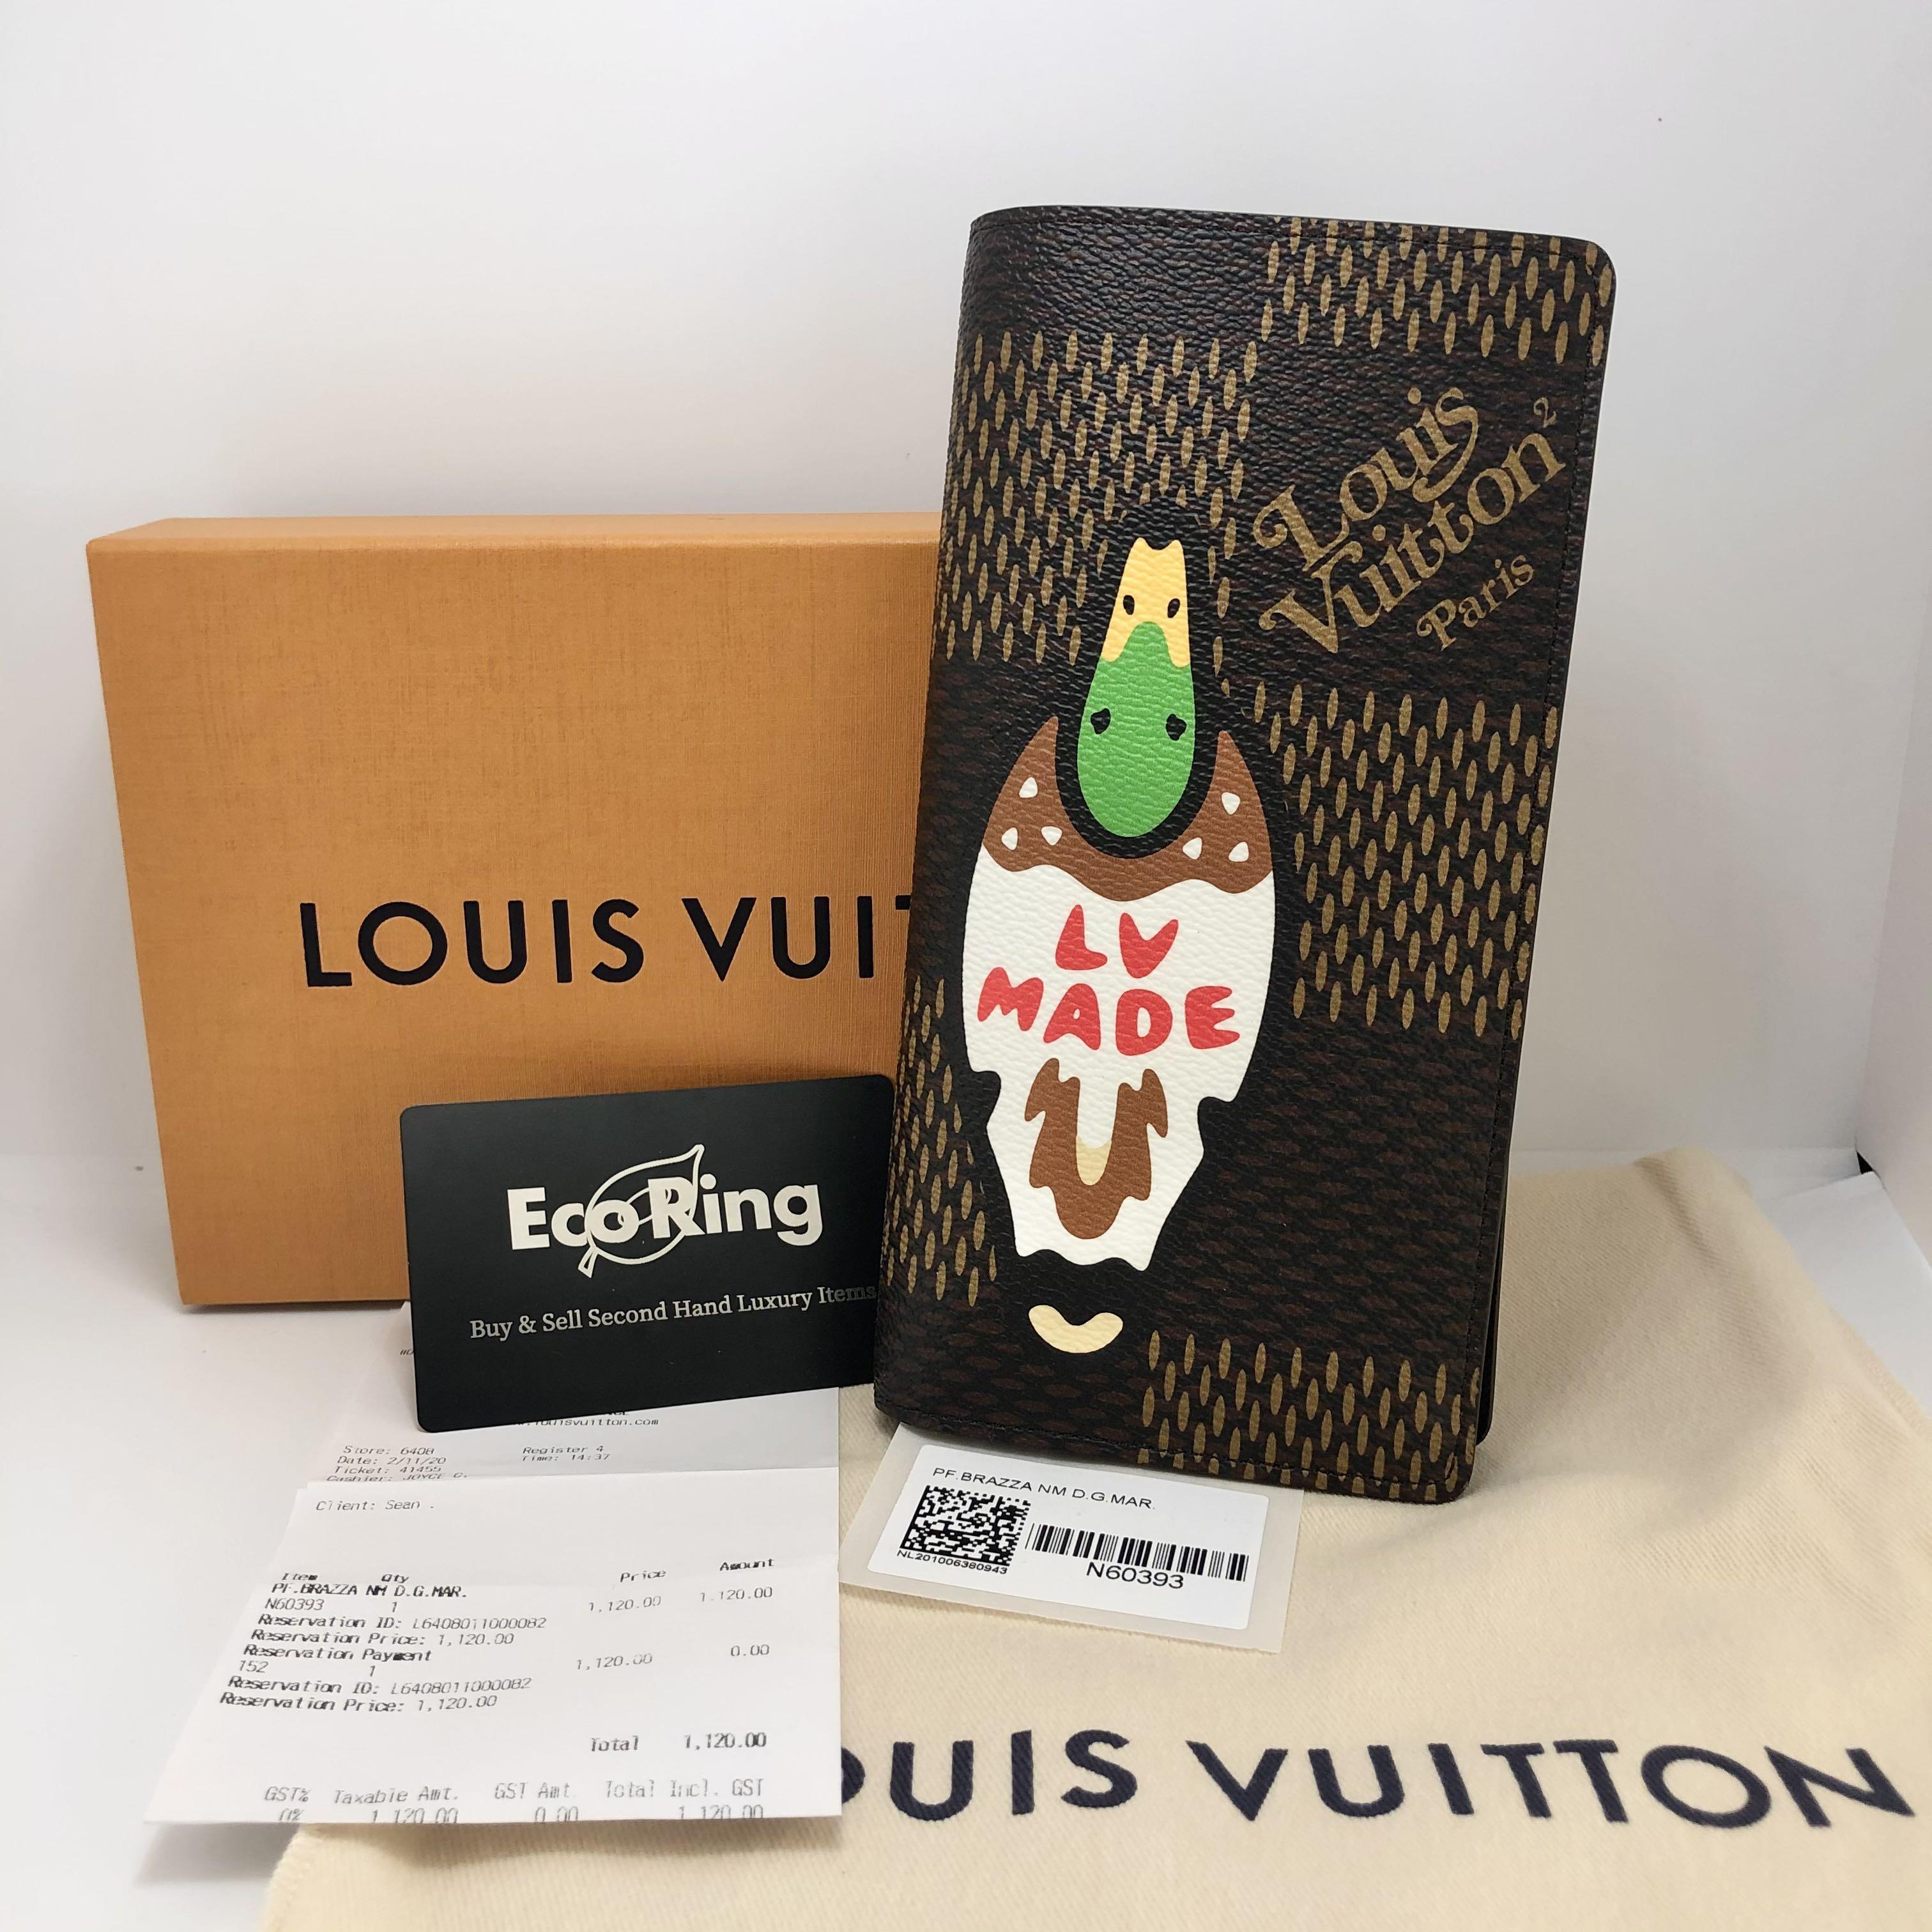 Louis Vuitton, Nigo Brazza Wallet